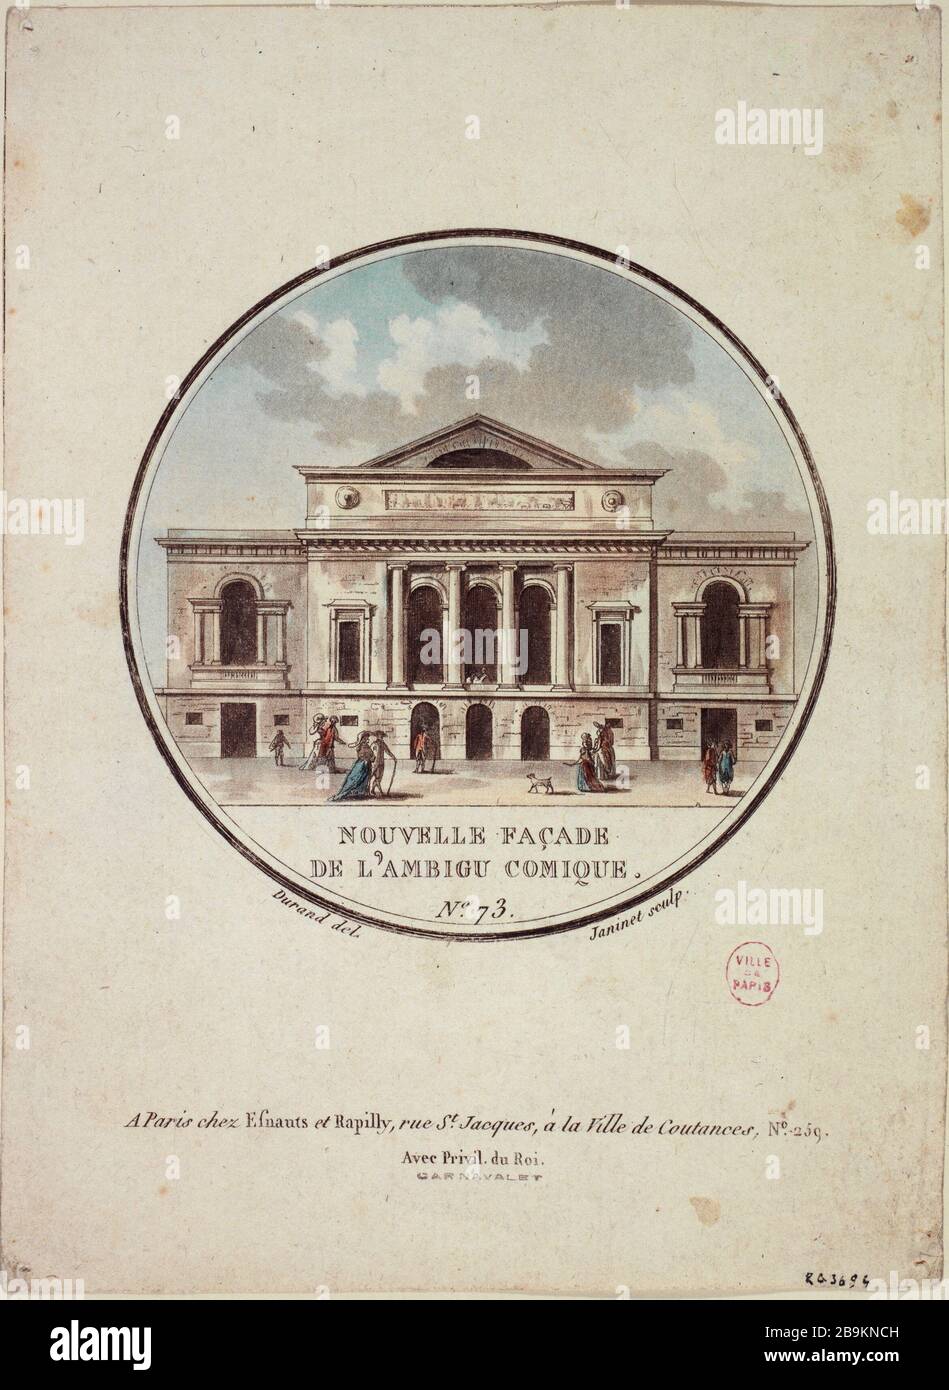 NEUE VORDERSEITE DES COMICS ZWEIDEUTIG, AUSGABE 73 Jean-François Janinet (1752-1814). "Nouvelle façade de l'Ambigu Comique, numéro 73". Tiefdruck. Paris, musée Carnavalet. Stockfoto